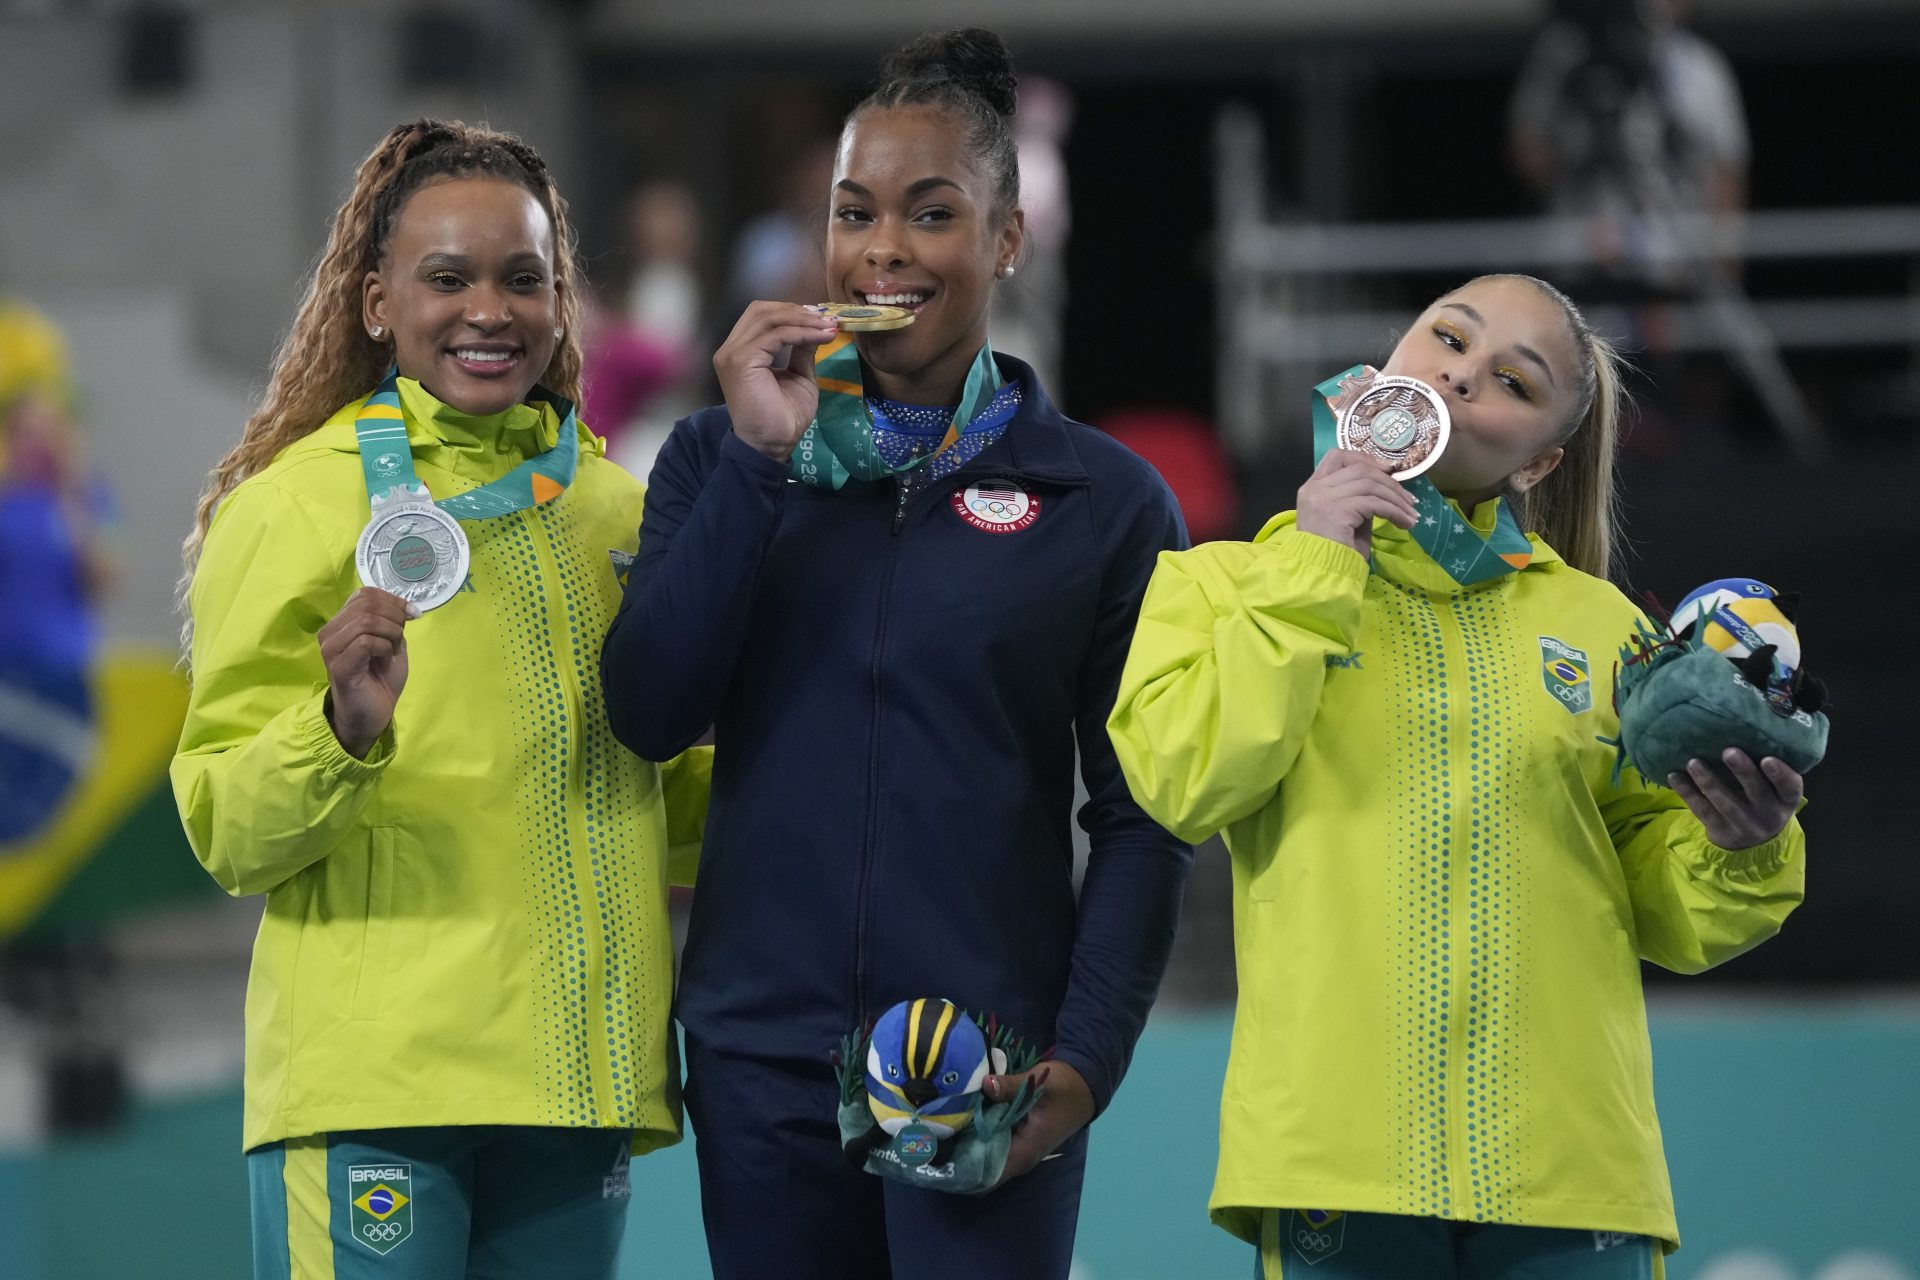 Rebeca Andrade e Flávia Saraiva comemoram a conquista das medalhas de prata e bronze - Foto: Martin Mejía/Associated Press/Estadão Conteúdo